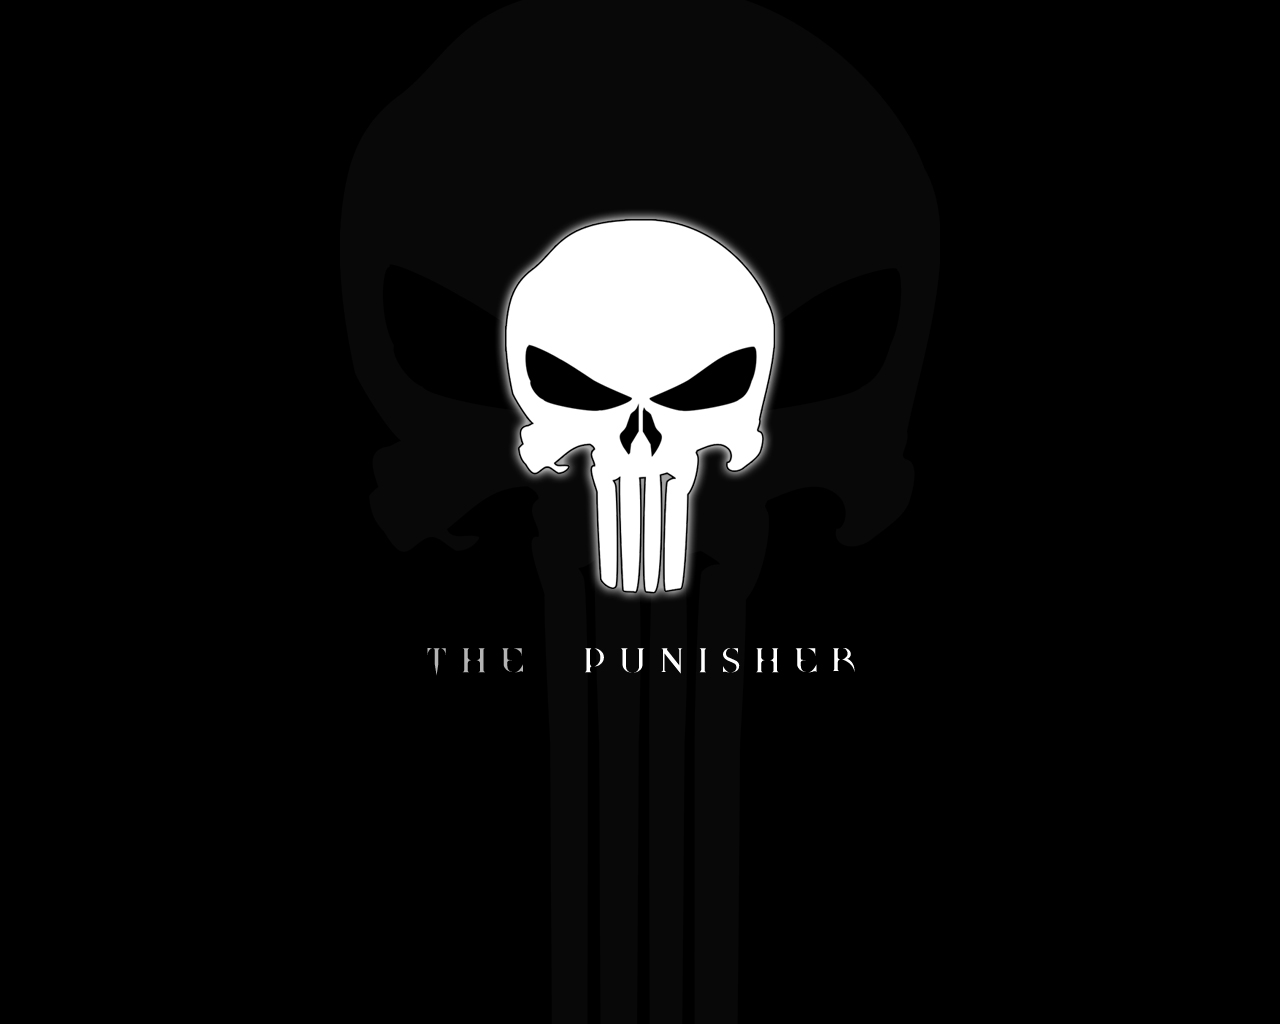 http://4.bp.blogspot.com/-sVZHZTpL6Z0/TkFJmtyCWYI/AAAAAAAACiM/HYqDhoUuczQ/s1600/The_Punisher_Skull_Logo_HD_Wallpaper_5_www.vvallpaper.net.jpg